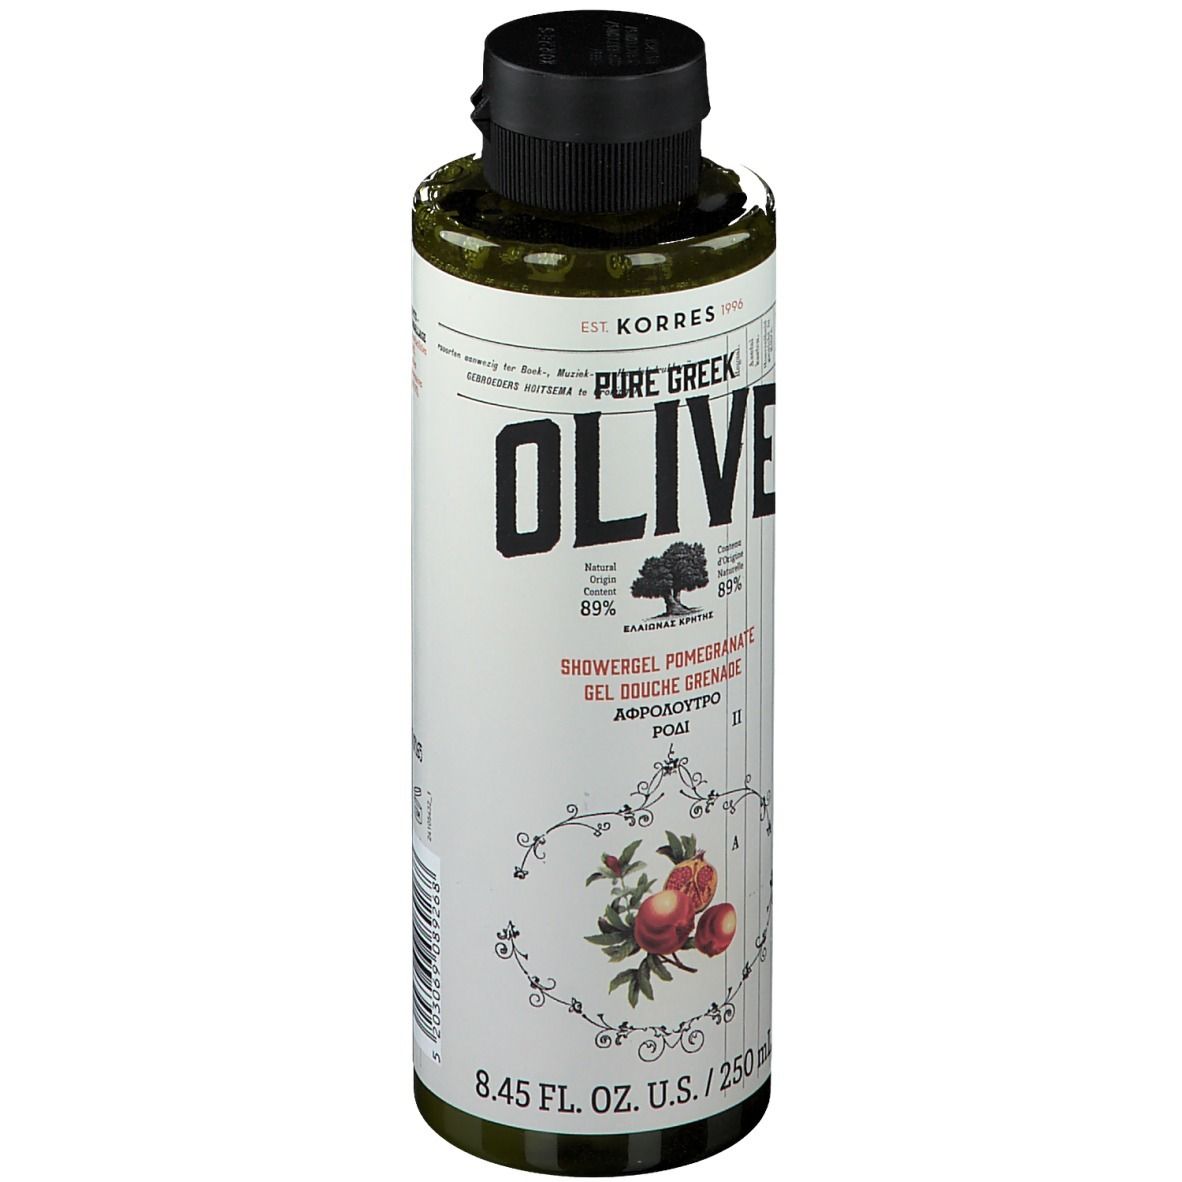 Korres Pure Greek Olive Shower Gel Pomegranate